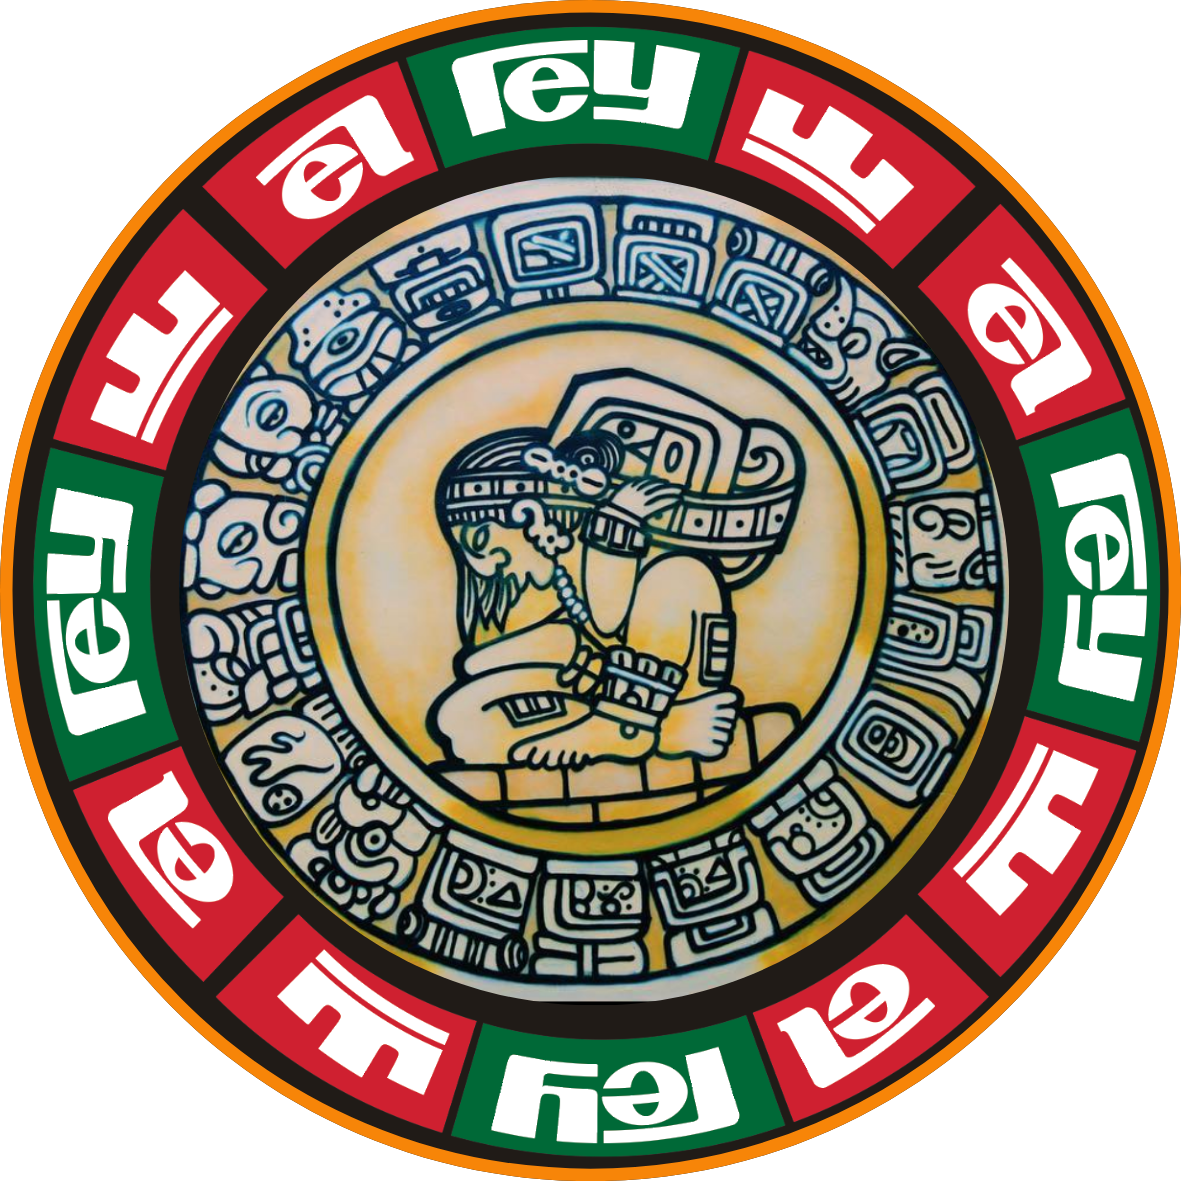 El Rey Logo copy (2) - Hamza zramdini.png